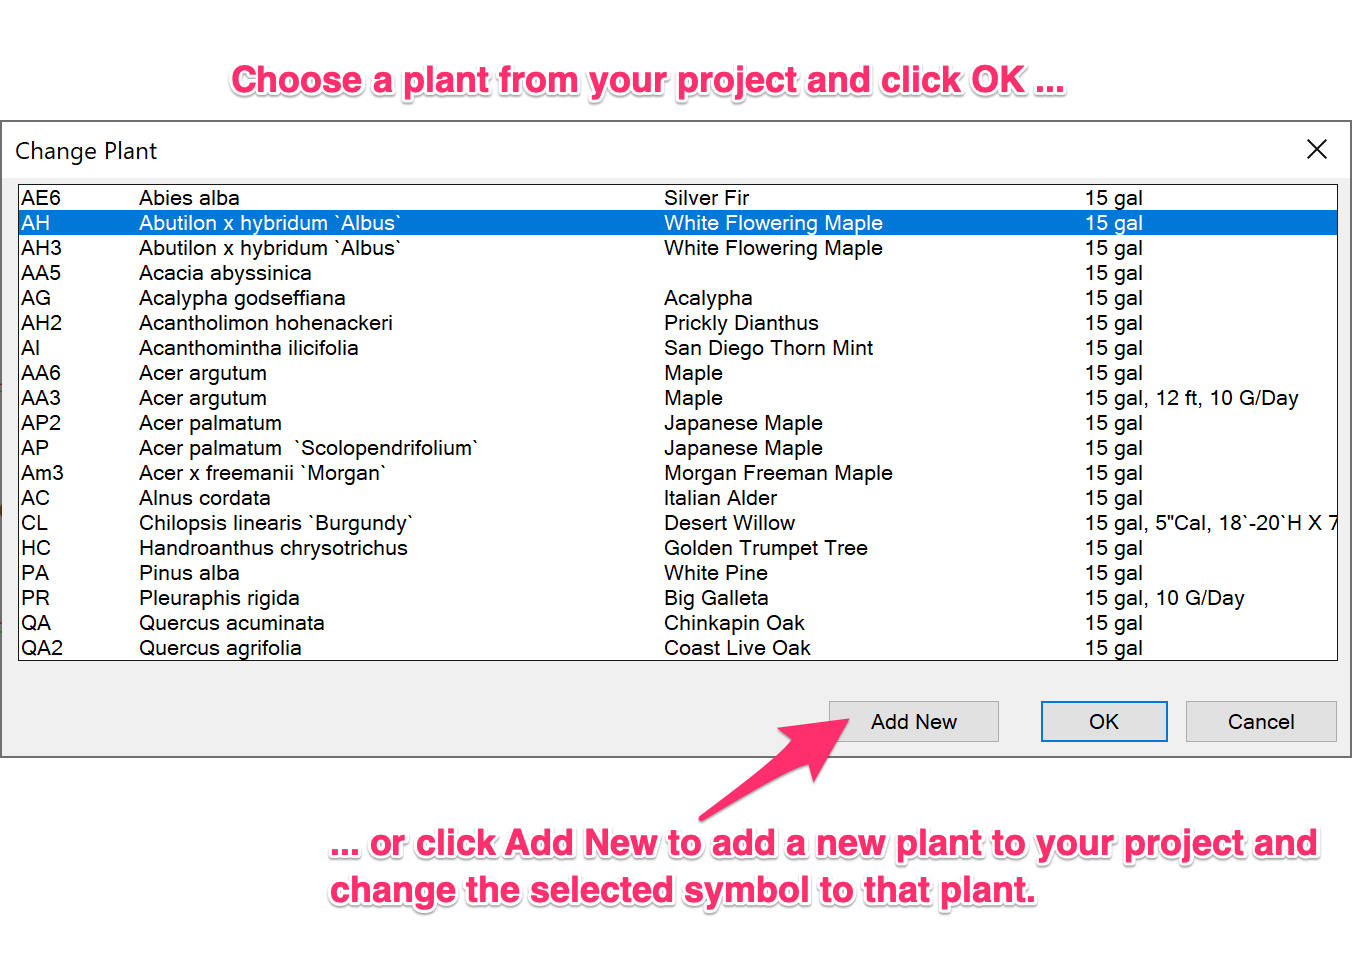 Change Plant dialog box